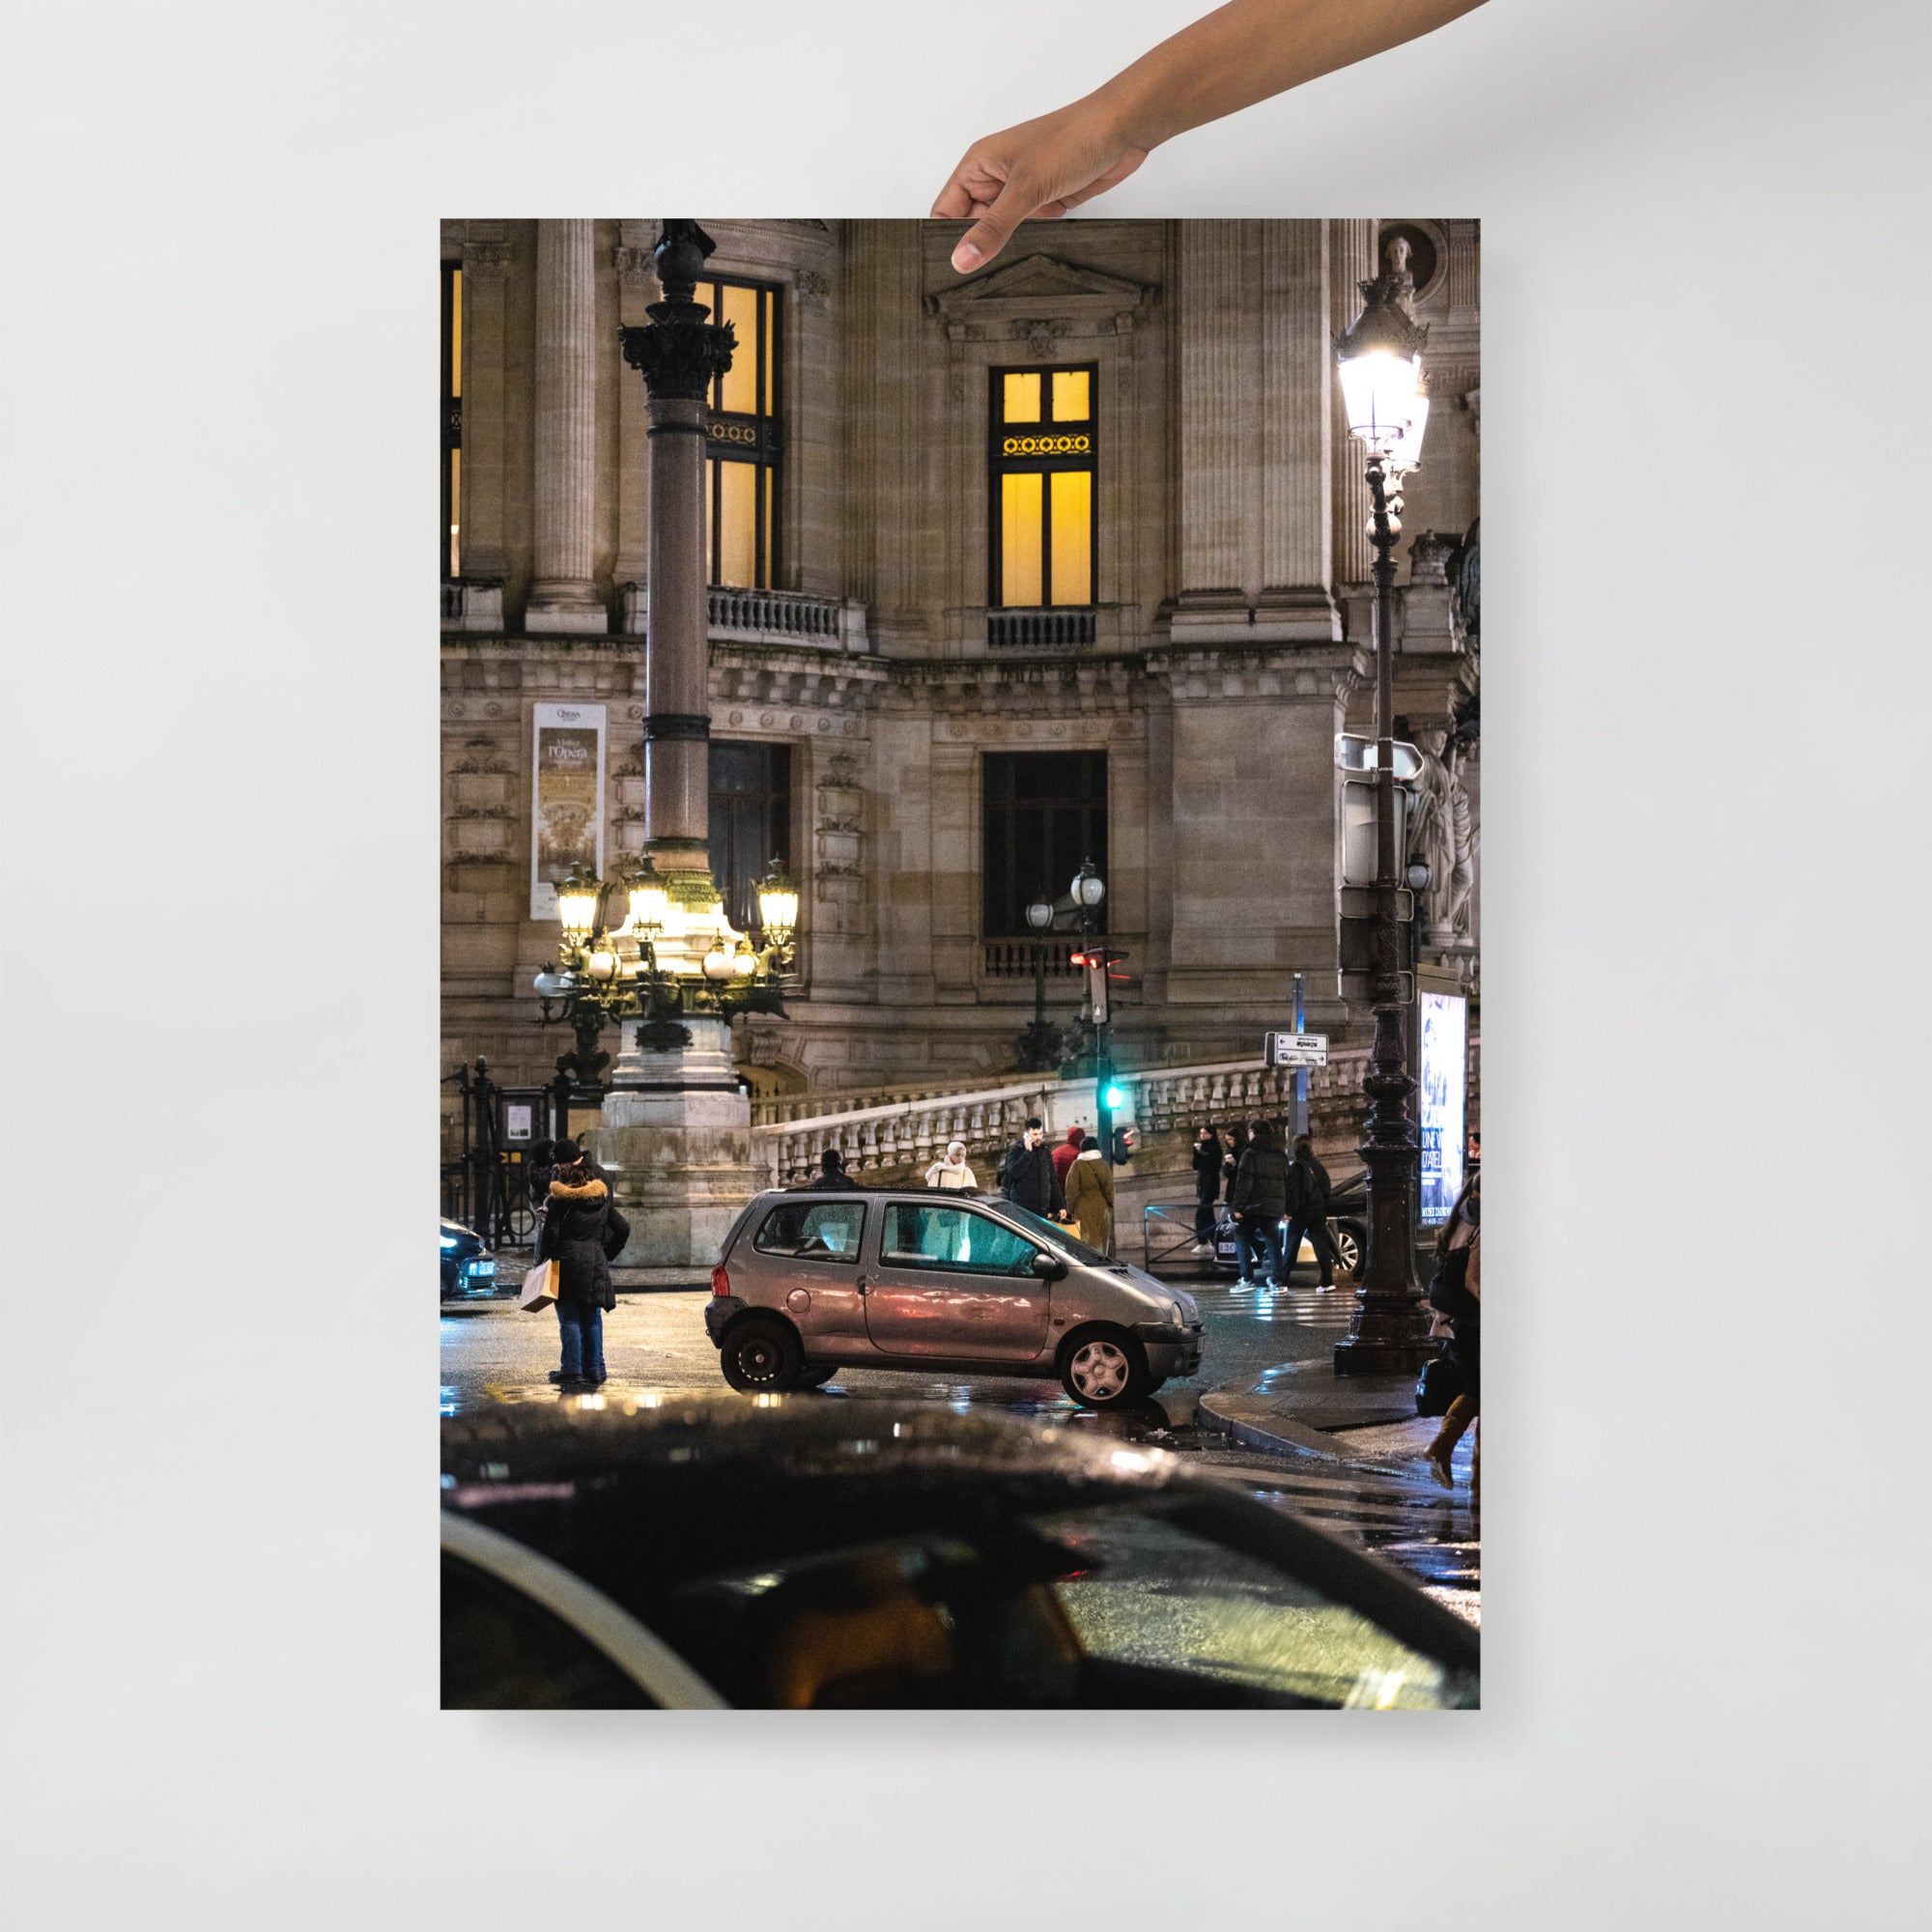 Poster mural - Twingo 1 Opéra – Photographie de voiture – Poster photo, poster XXL, photographie murale et des posters muraux unique au monde. La boutique de posters créée par Yann Peccard un Photographe français.